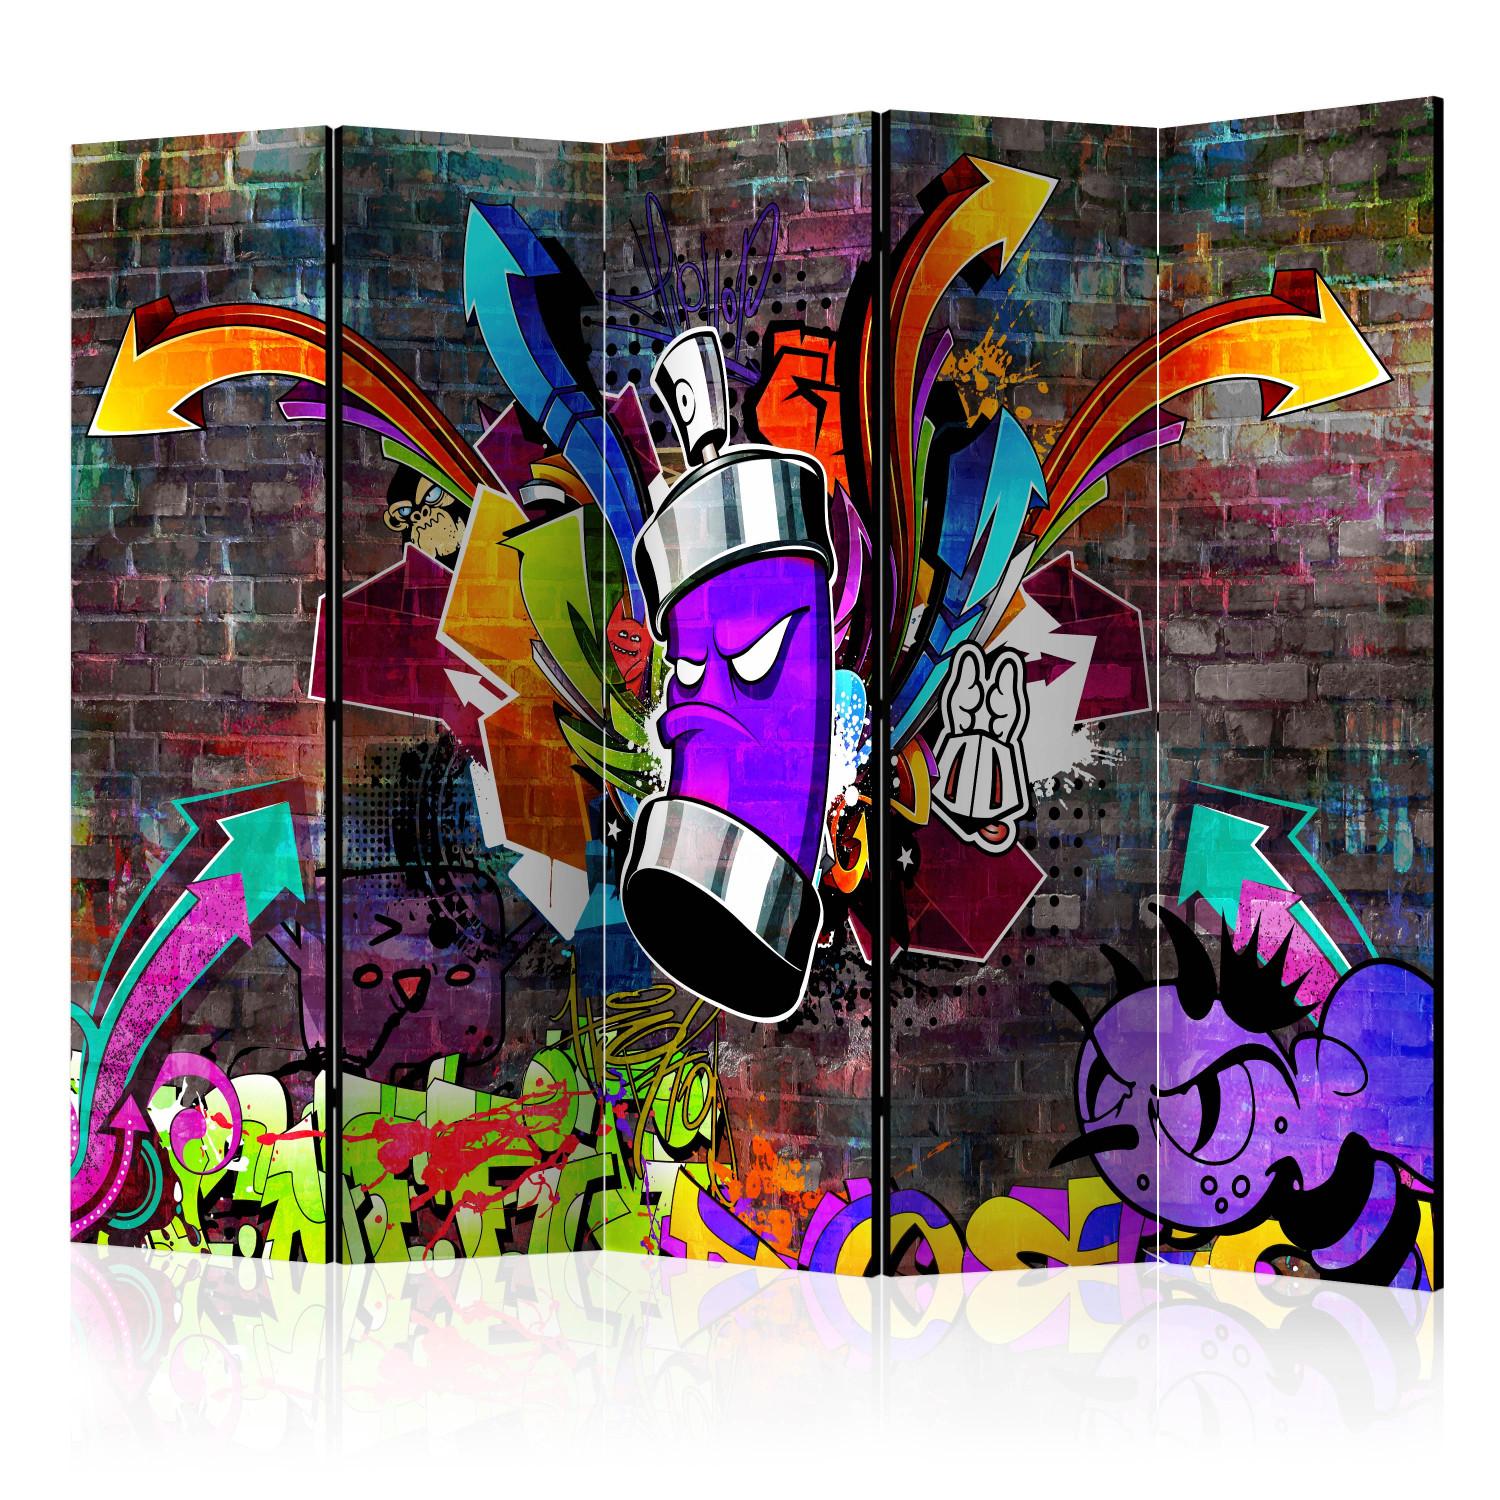 Biombo Graffiti: Colorful Attack II (5 partes) - mural urbano sobre ladrillos